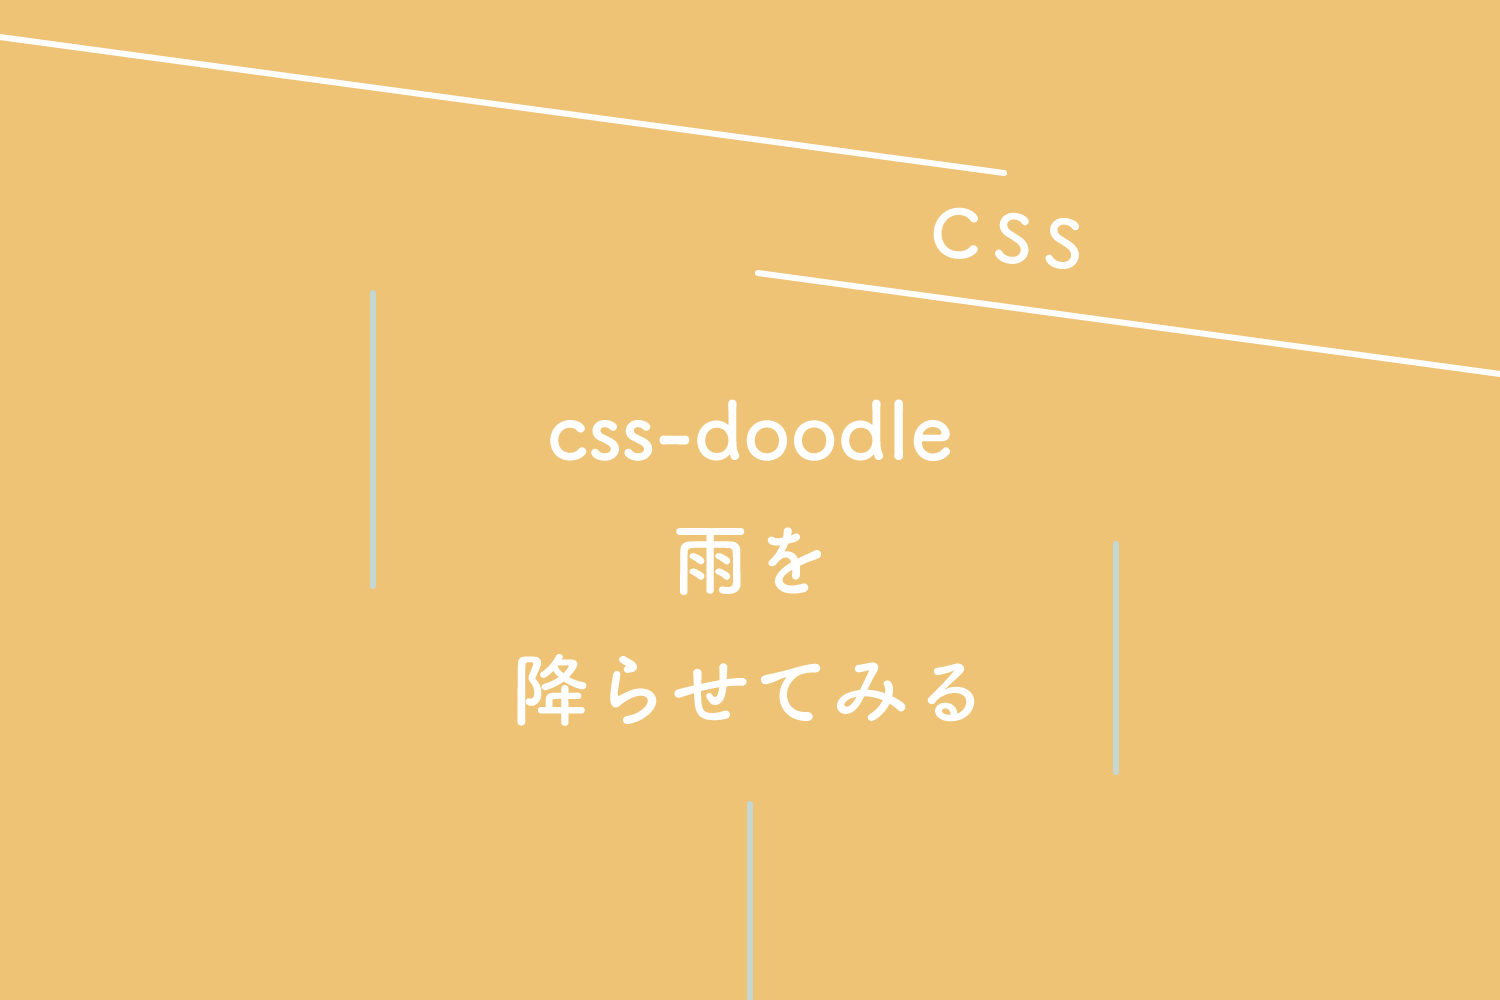 【CSS】css-doodle を使って雨を降らせてみる